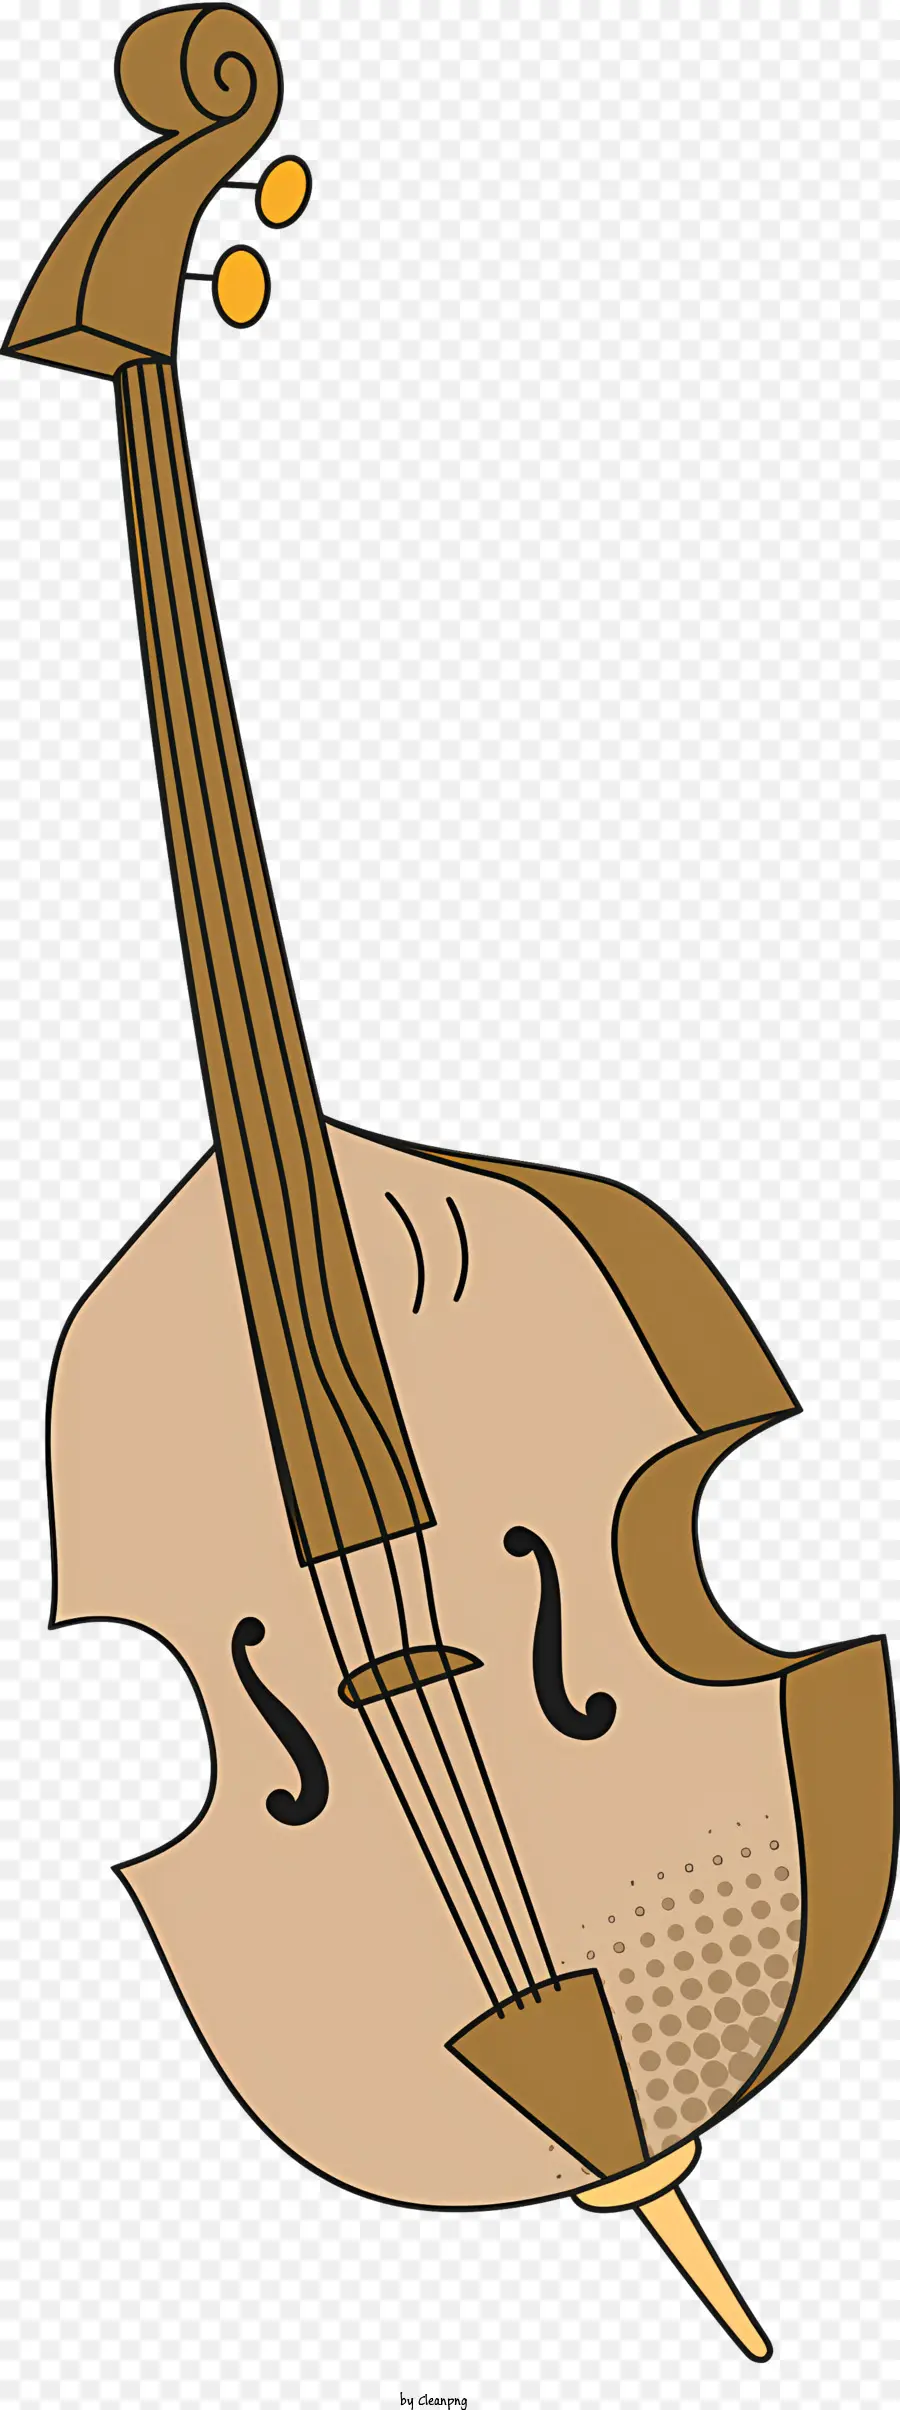 Biểu tượng Cello String nhạc cụ Bow Bow - Vẽ cello với bốn dây và cung